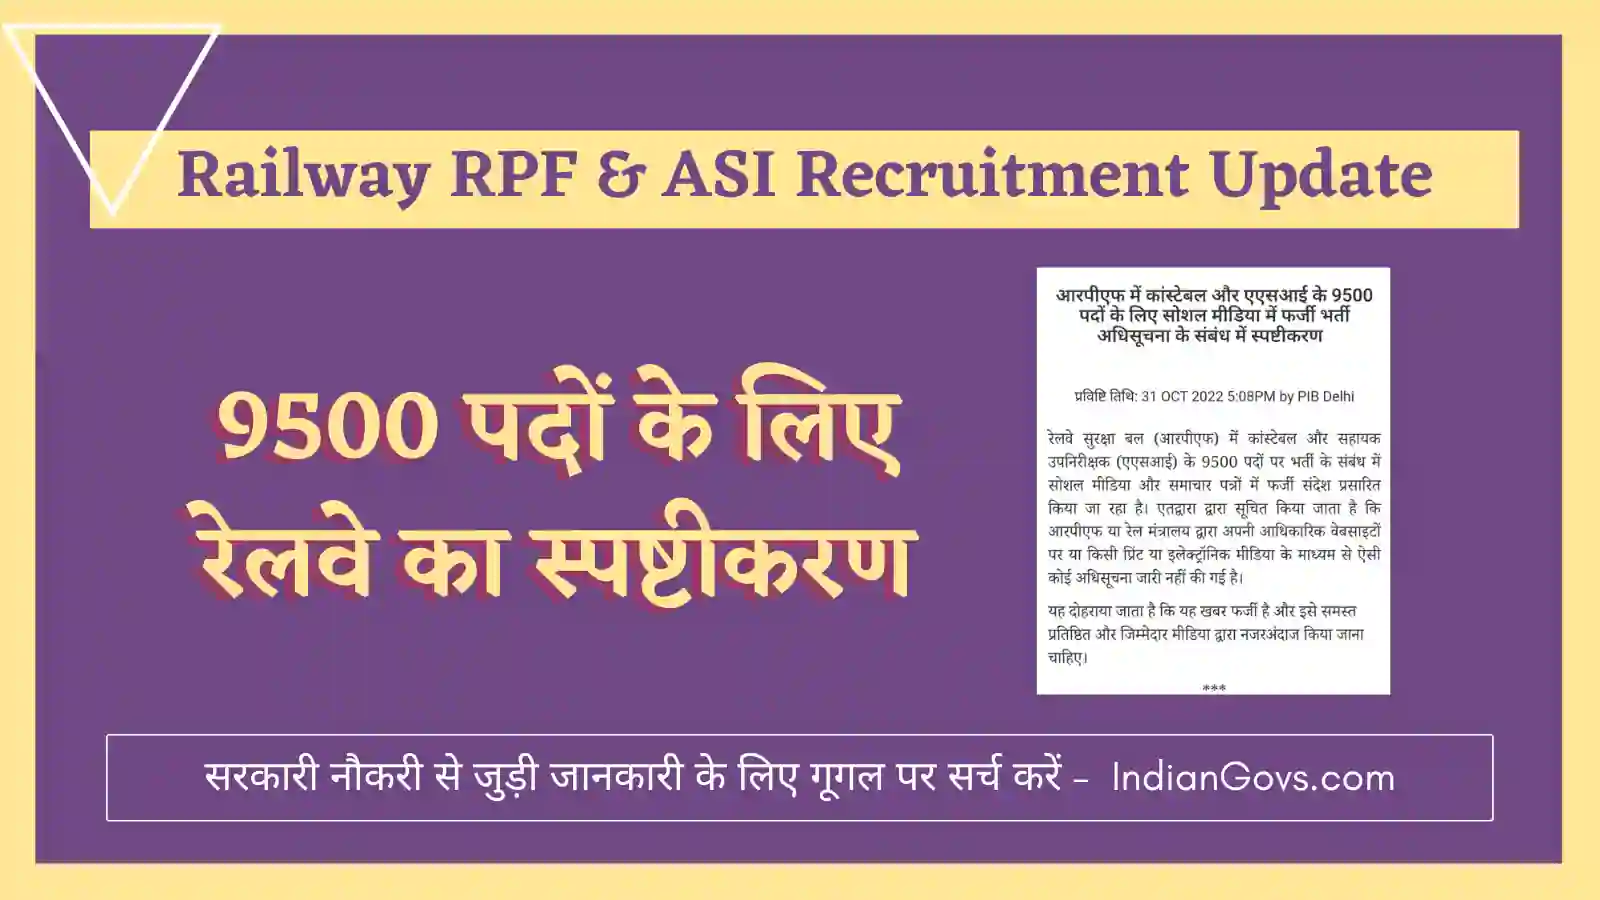 Railway RPF & ASI Recruitment Update